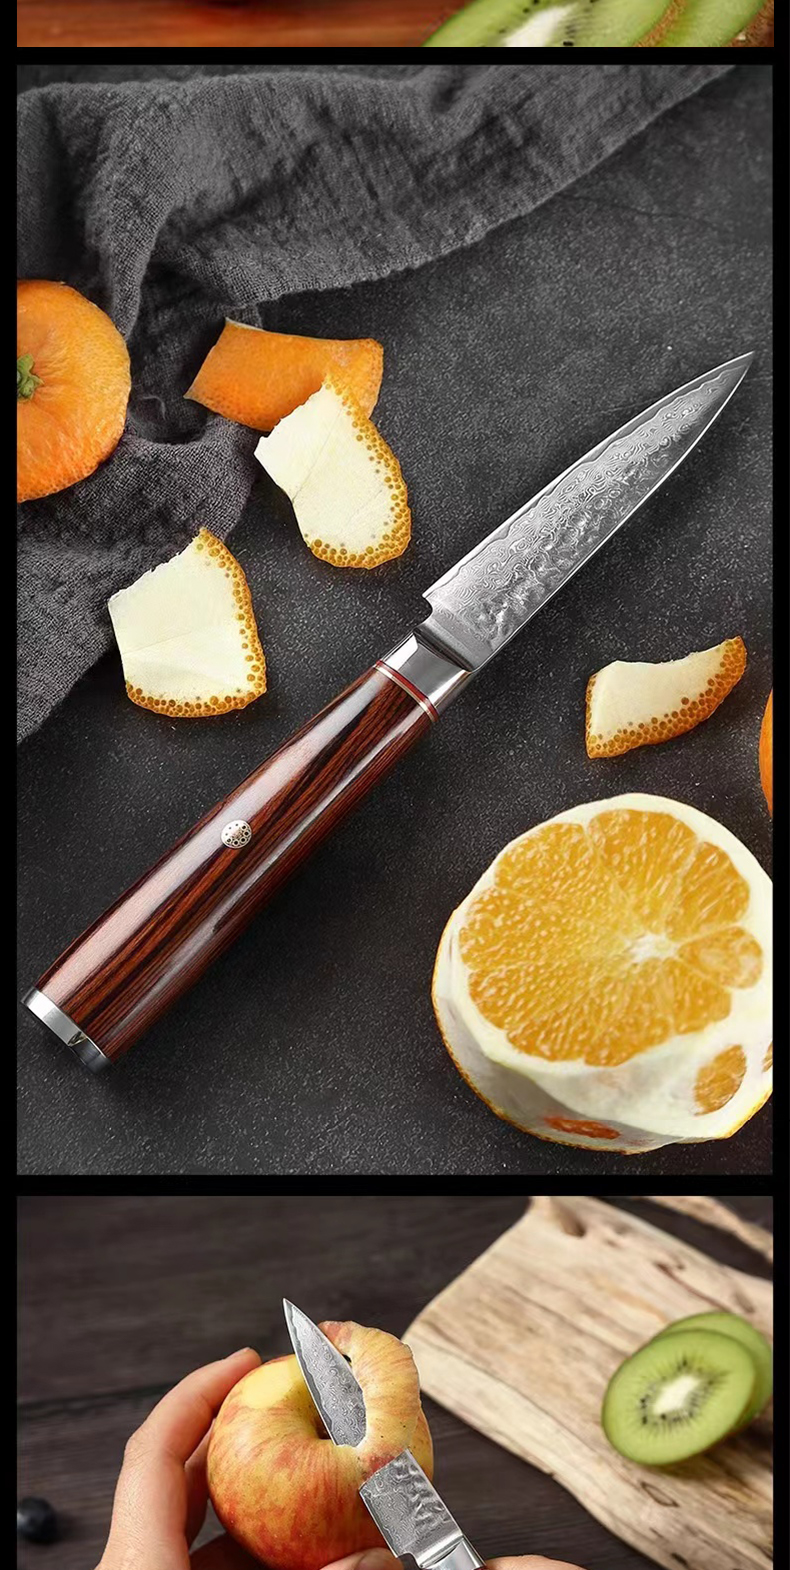 Damascus fruit knife